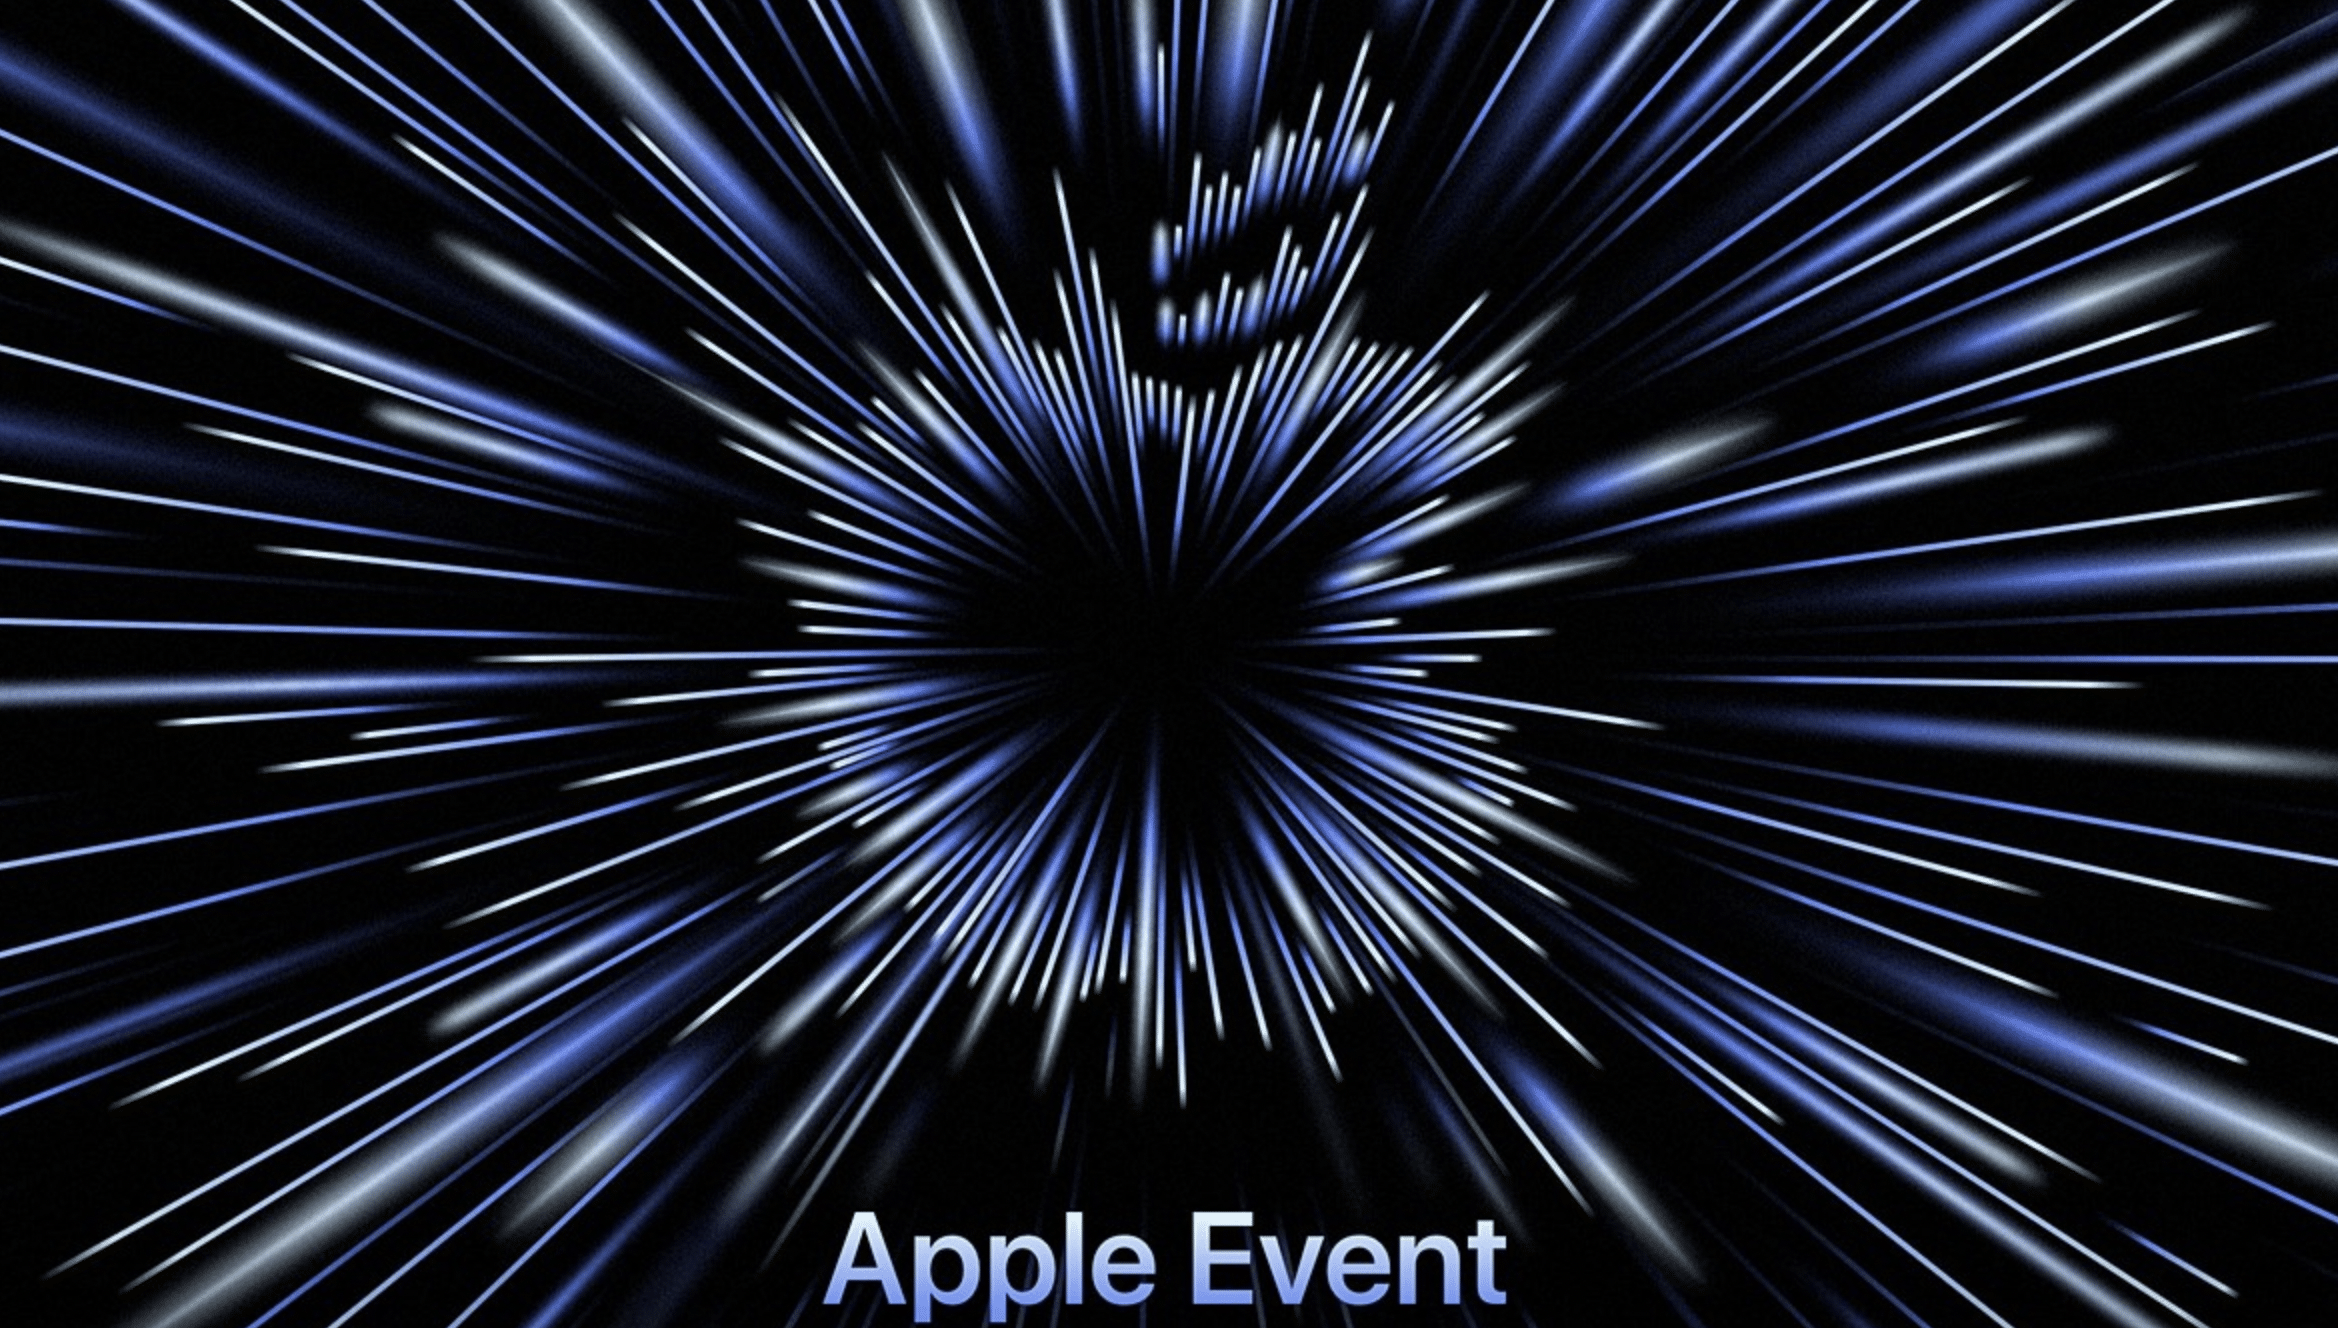 [TERMINATO] Segui da QUI l’Apple Event in DIRETTA | OGGI, ore 18:00